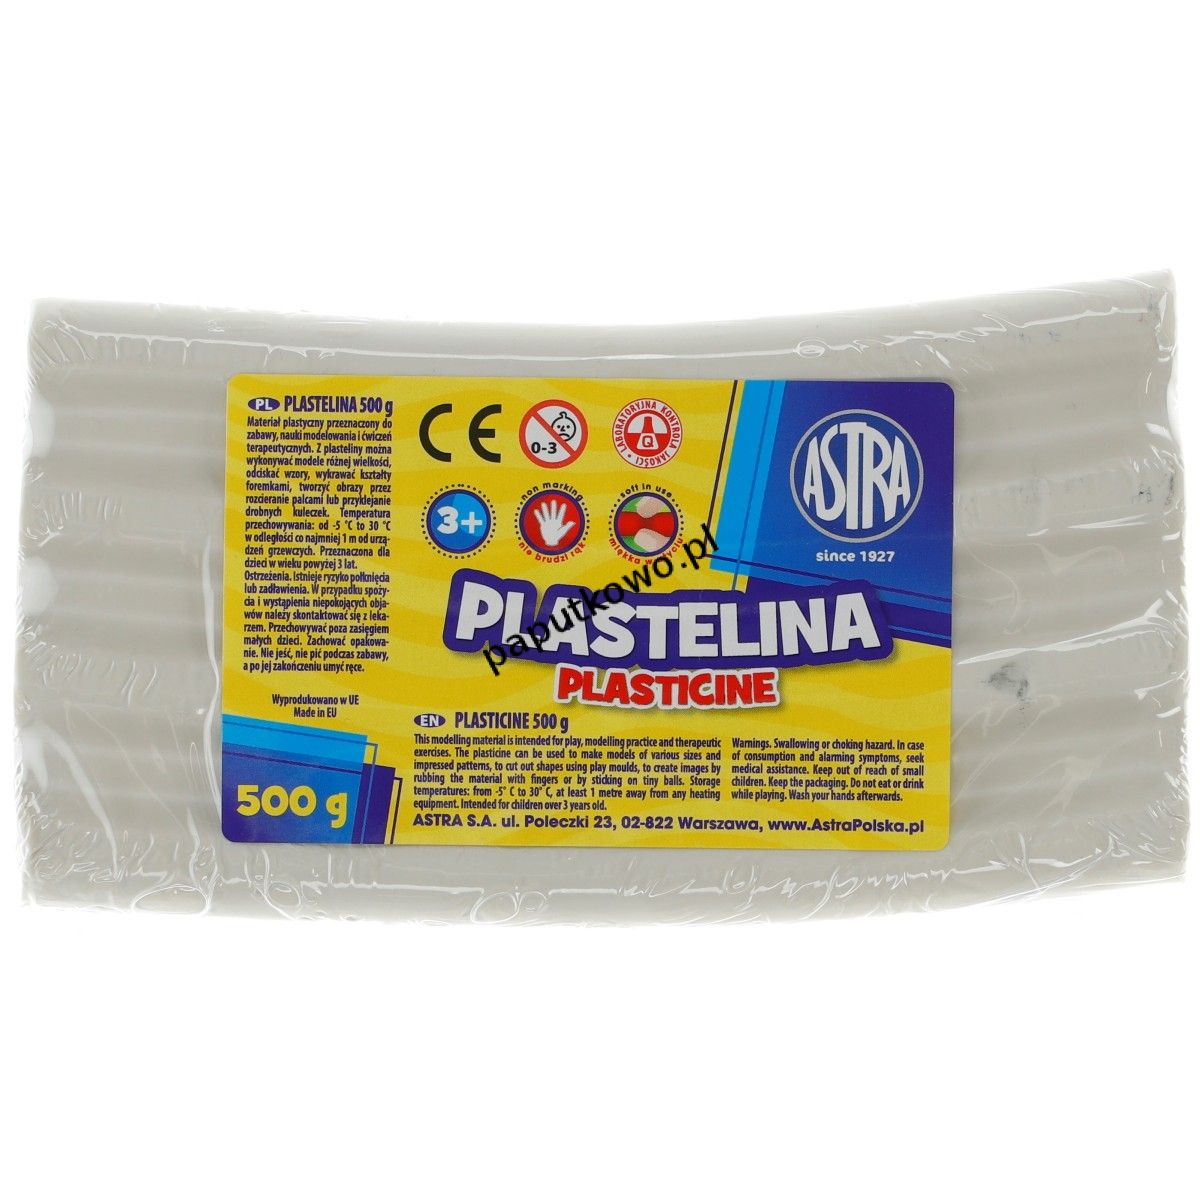 Plastelina Astra 1 kol. biała